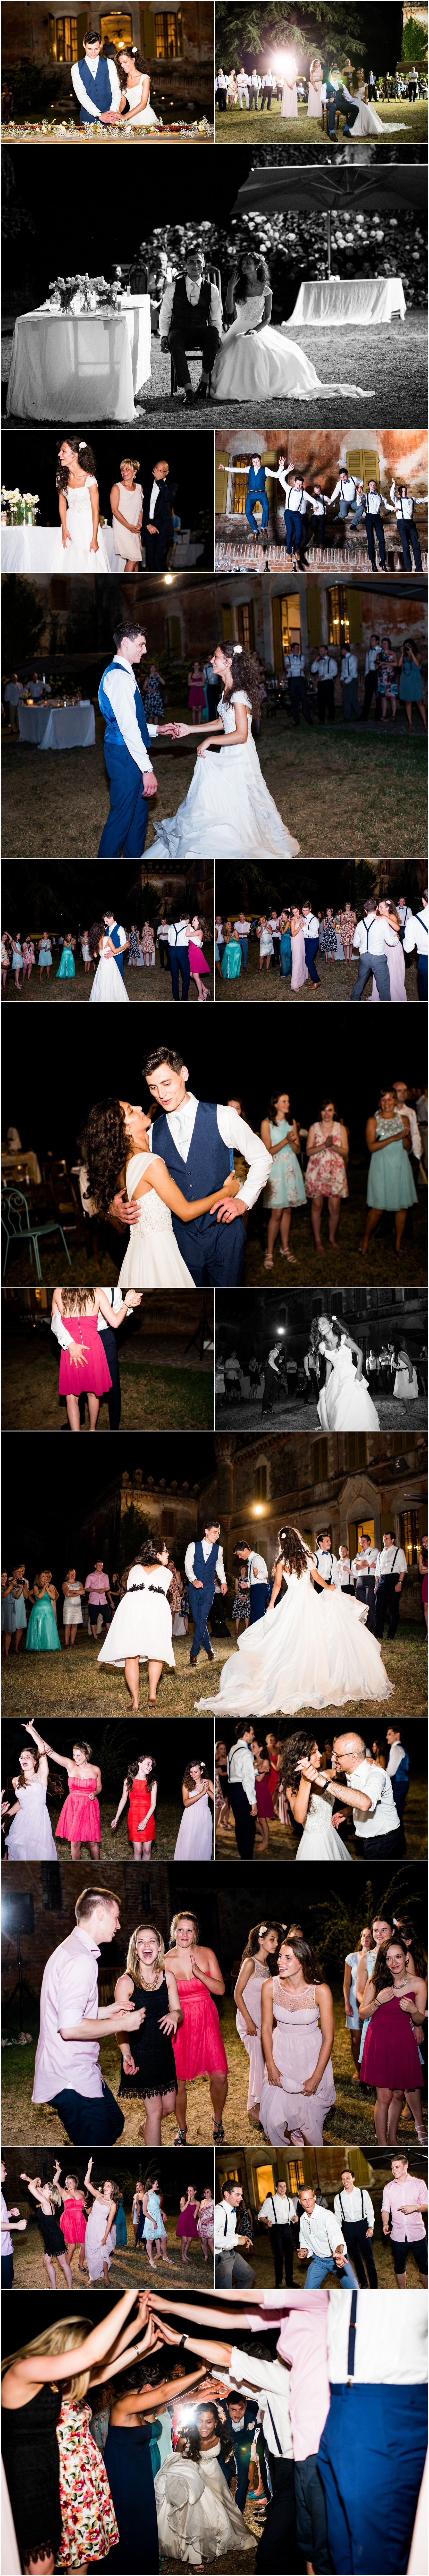 tuscany-italy-wedding-ricky-baillie-photography-wedding-photographers-in-tuscany_0008.jpg